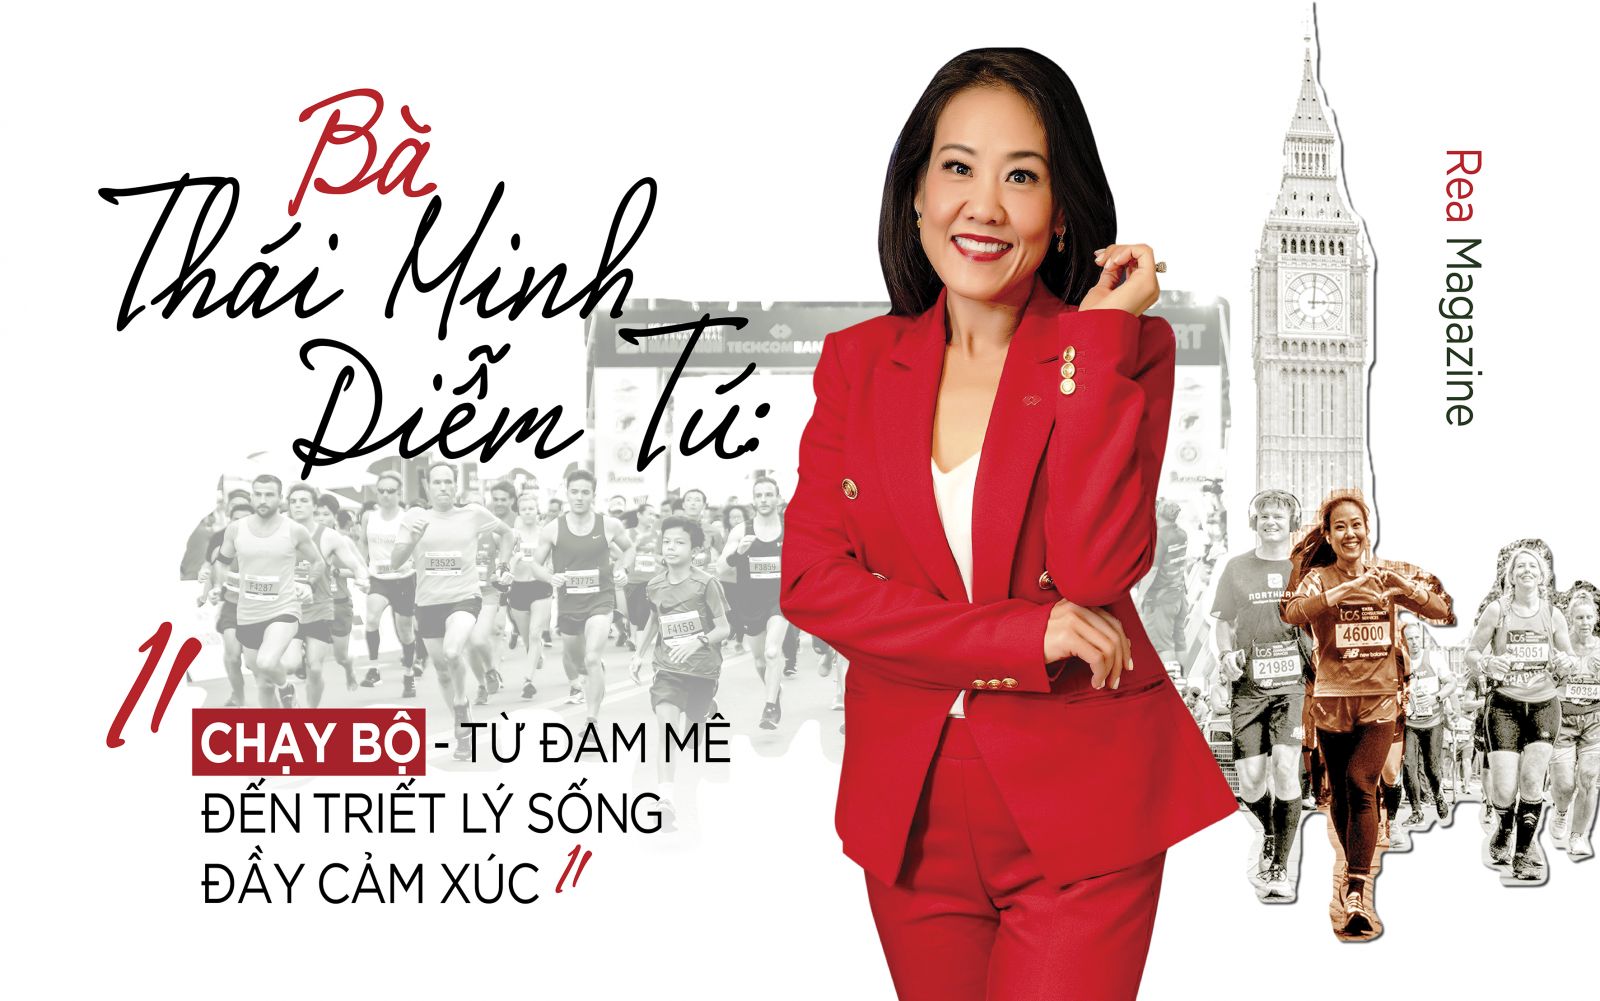 Bà Thái Minh Diễm Tú - Giám đốc Khối Tiếp thị Techcombank: “Chạy bộ - Từ đam mê đến triết lý sống đầy cảm xúc“